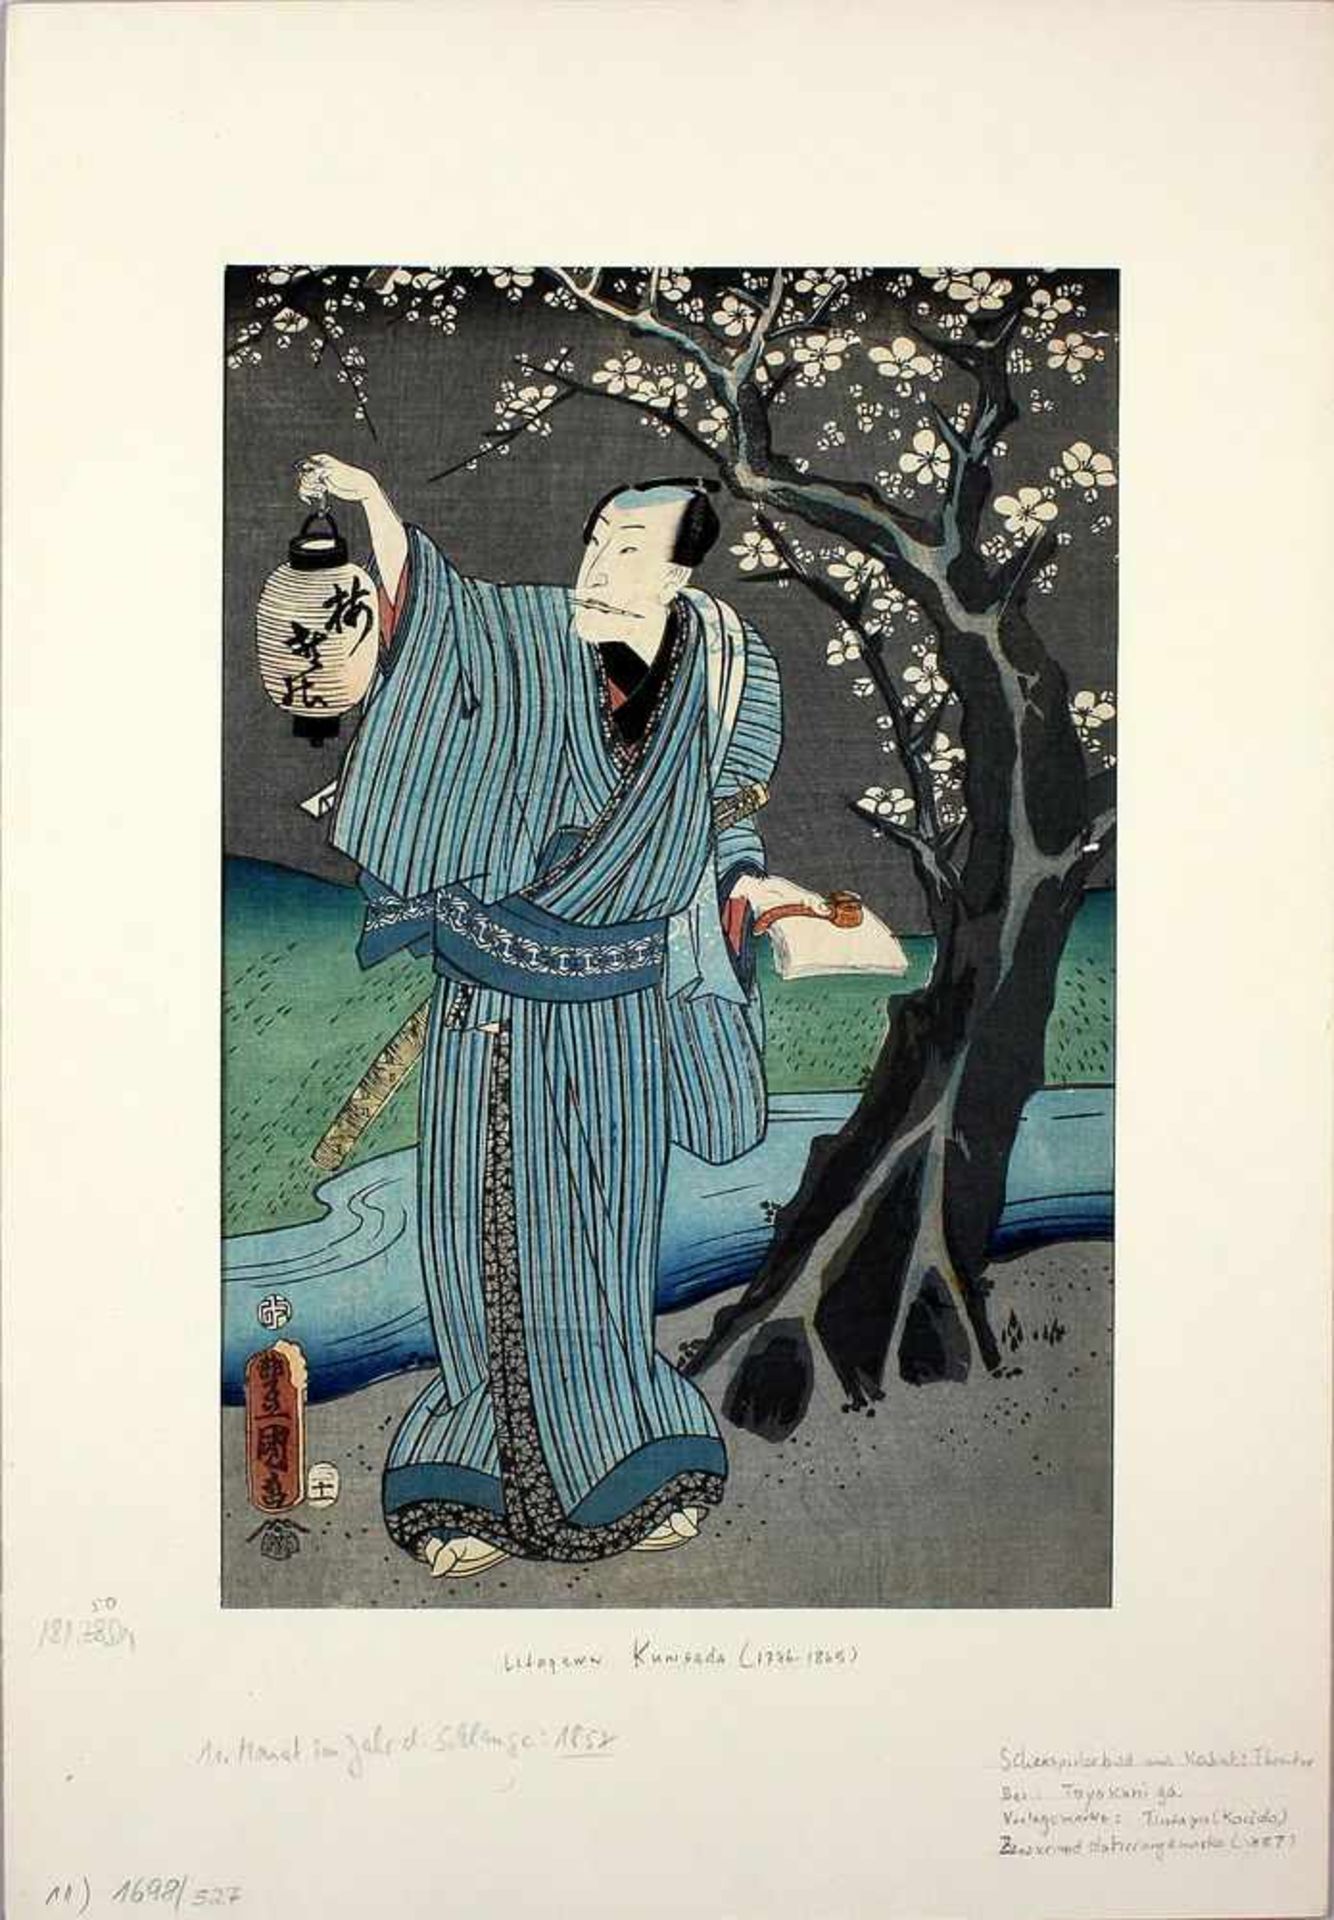 Japanischer Farbholzschnitt (19. Jh.)Wohl Utagawa Kunisada. Schauspieler. Altersspuren, kl.